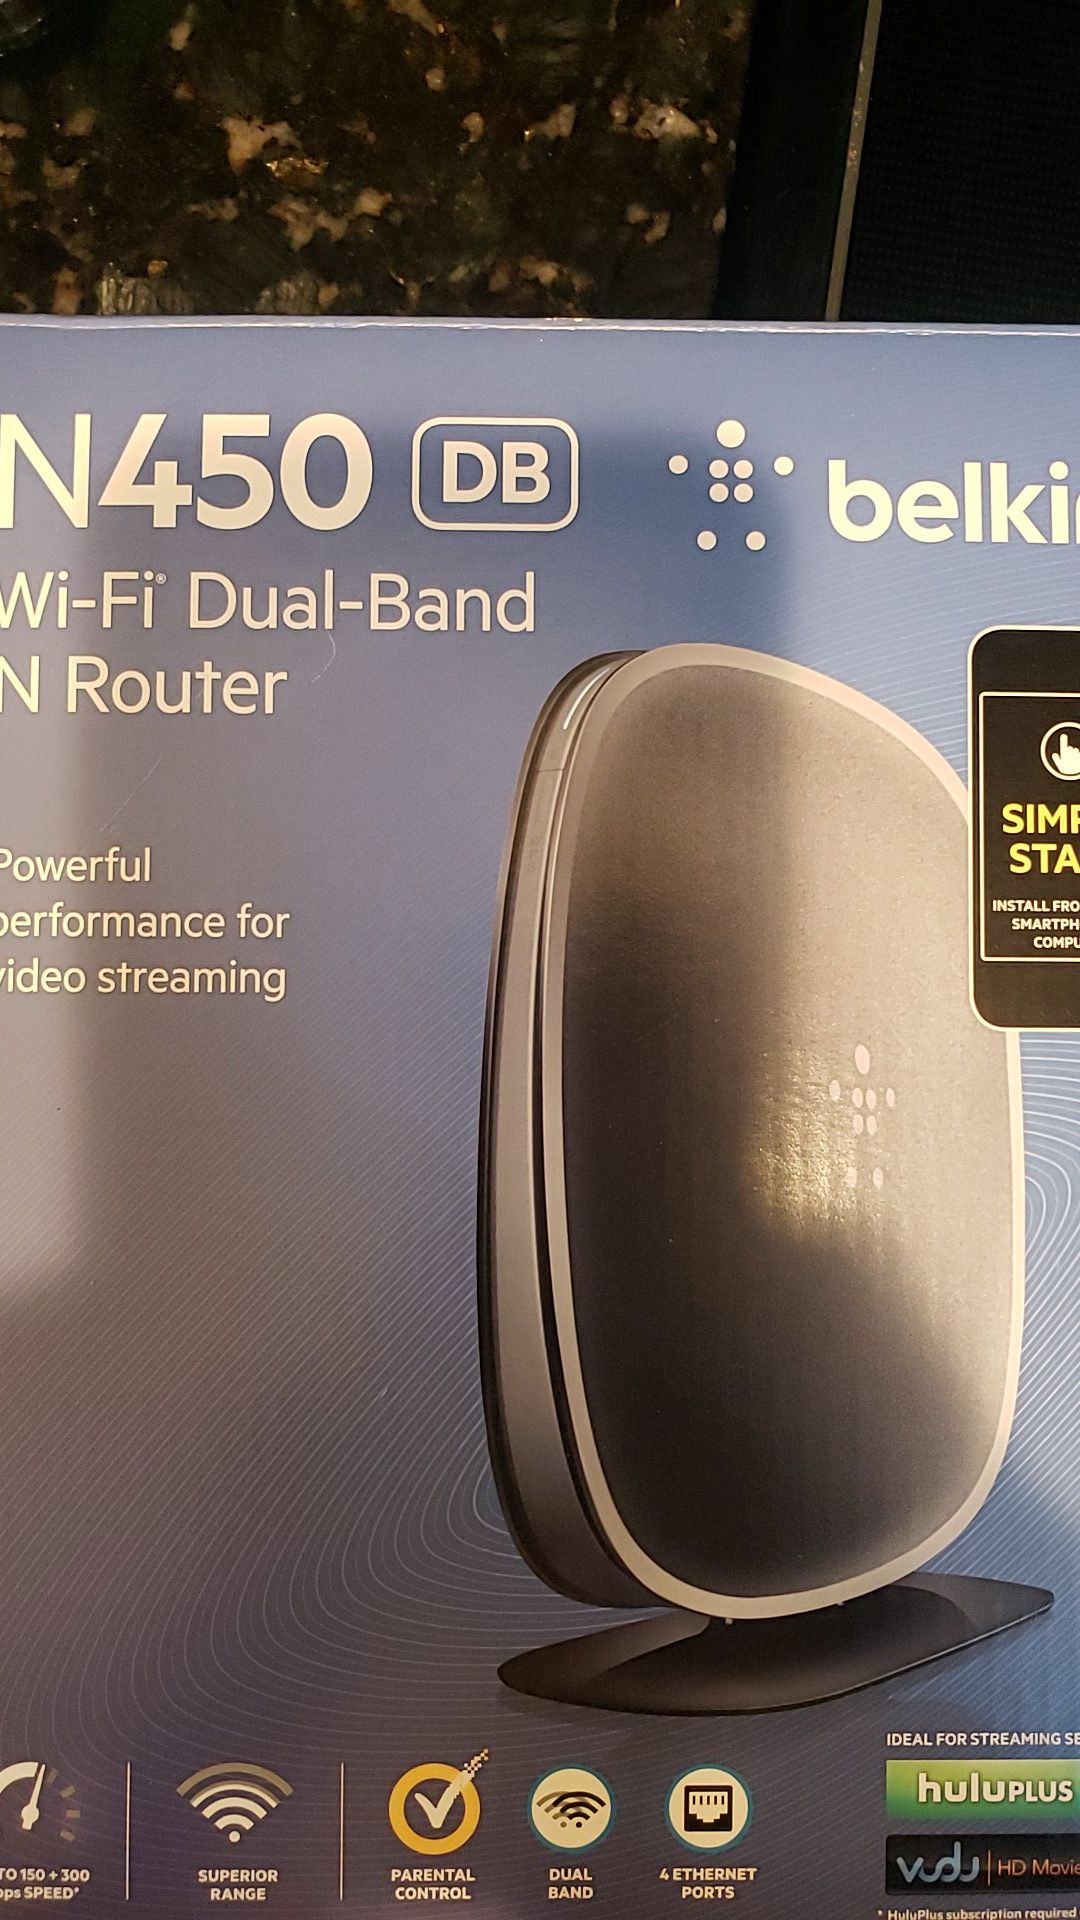 Belkin n450 router wireless